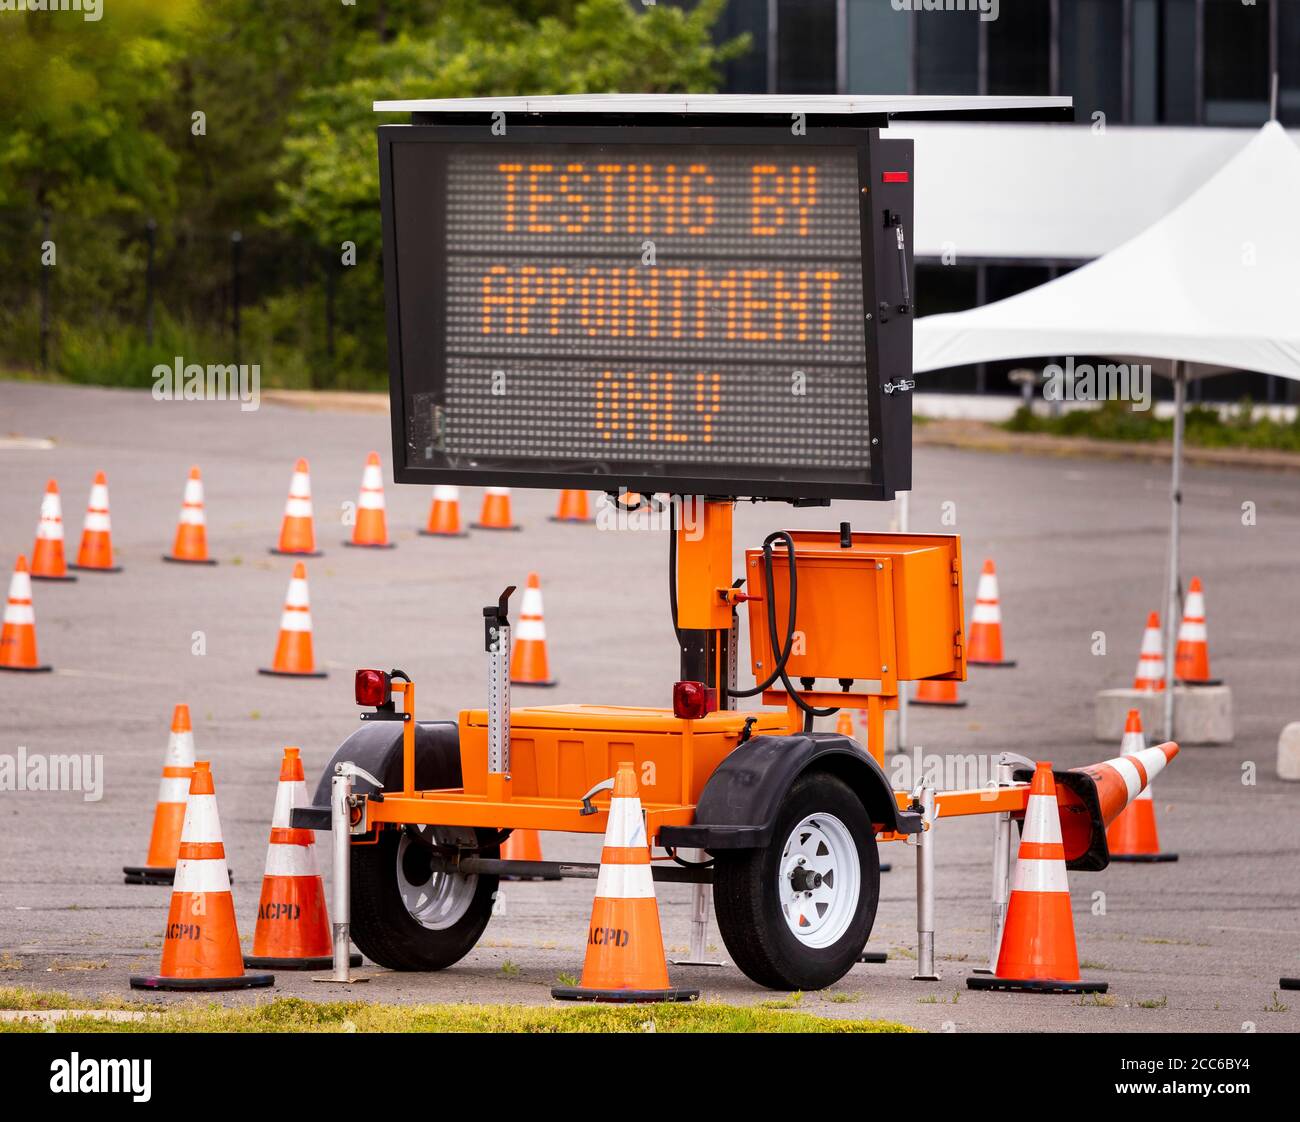 ARLINGTON, VIRGINIA, USA, 11 MAGGIO 2020: Sito di test Covid-19, segni per test solo su appuntamento. Foto Stock